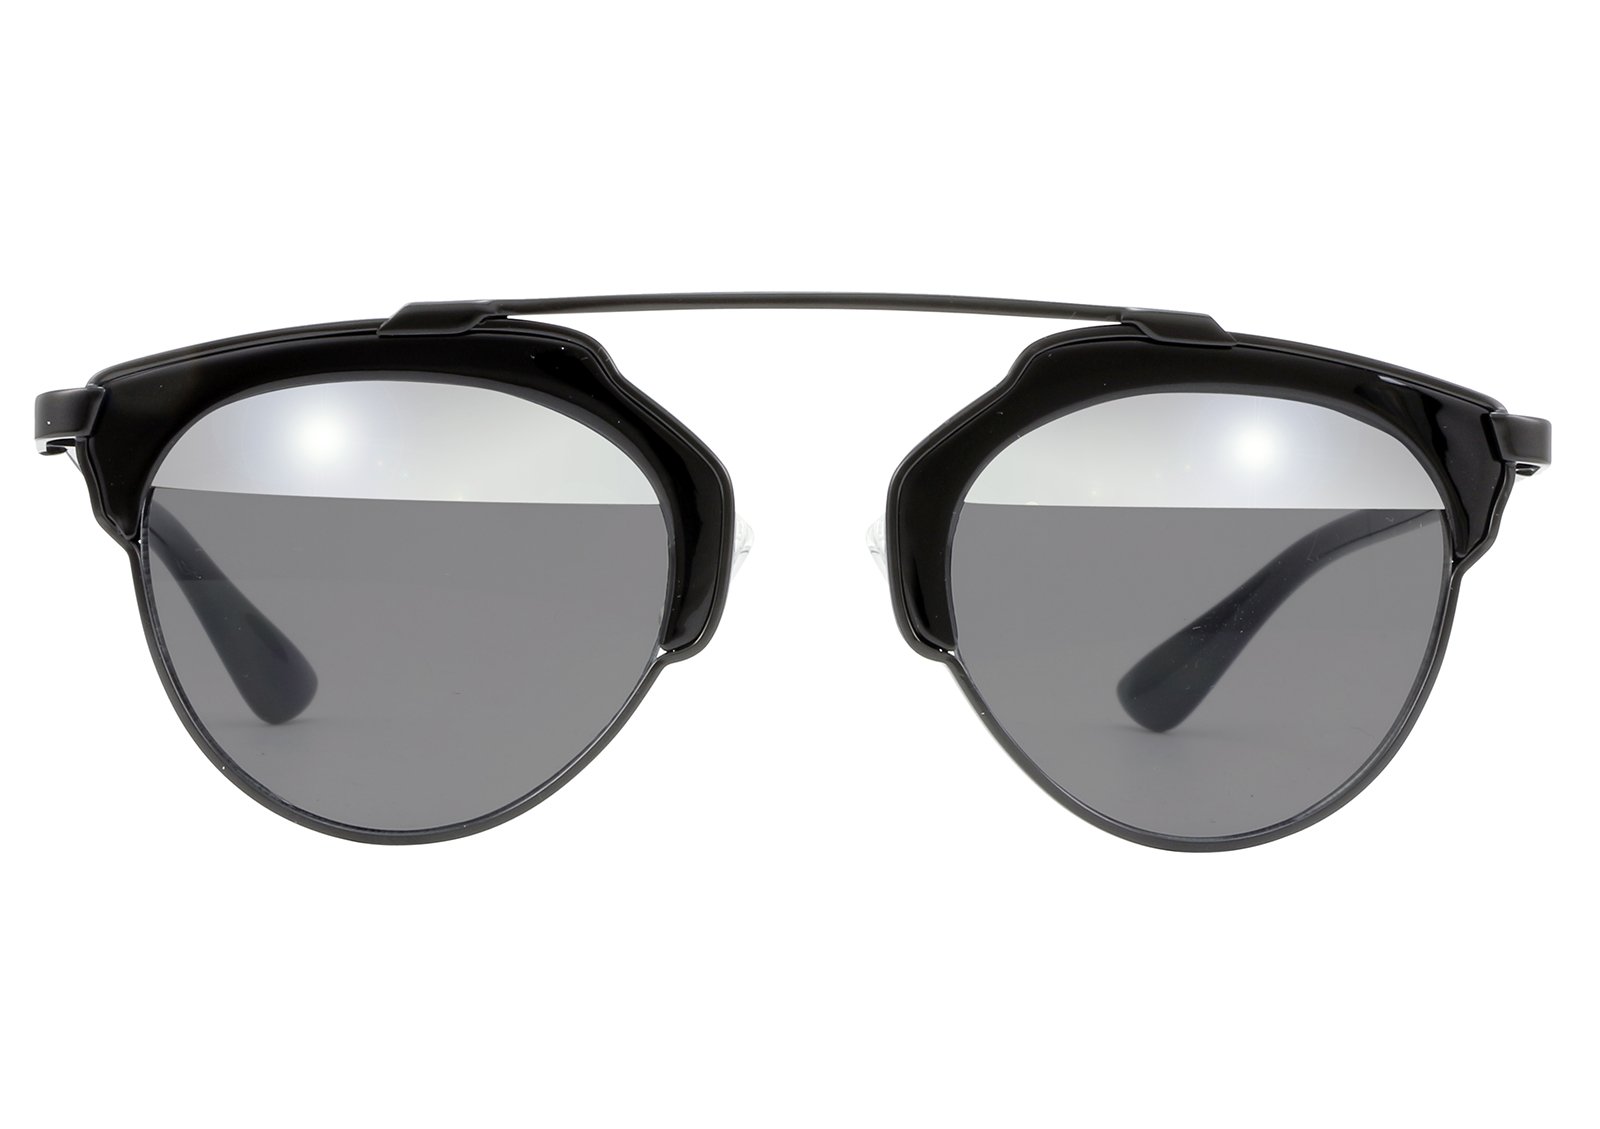 IYU Design Two-toned Lens Sunglasses For Men - Irina